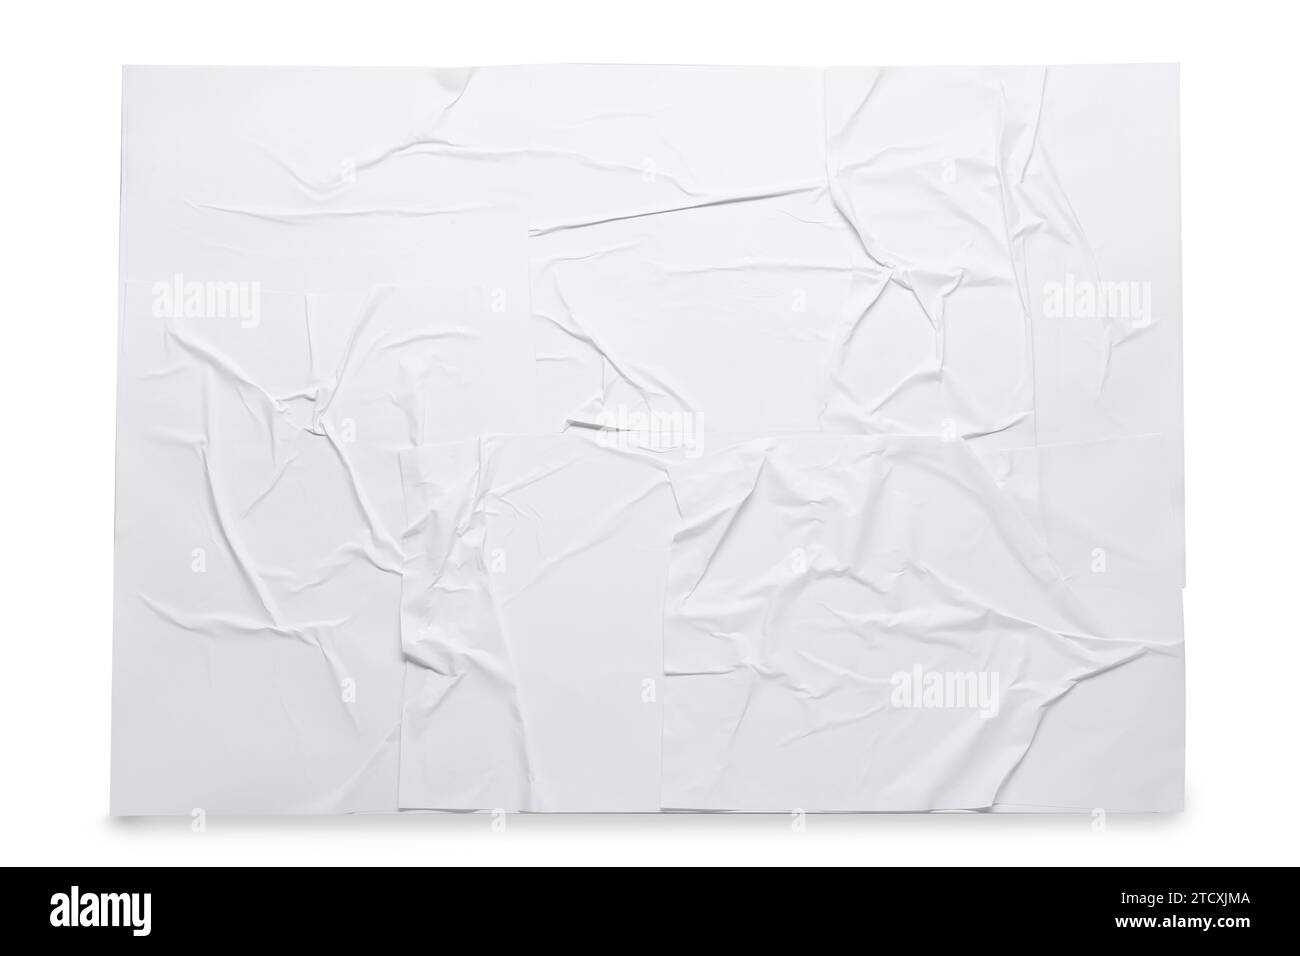 Foglio di carta bianco increspato su sfondo grigio chiaro, vista dall'alto. Poster a parete Foto Stock